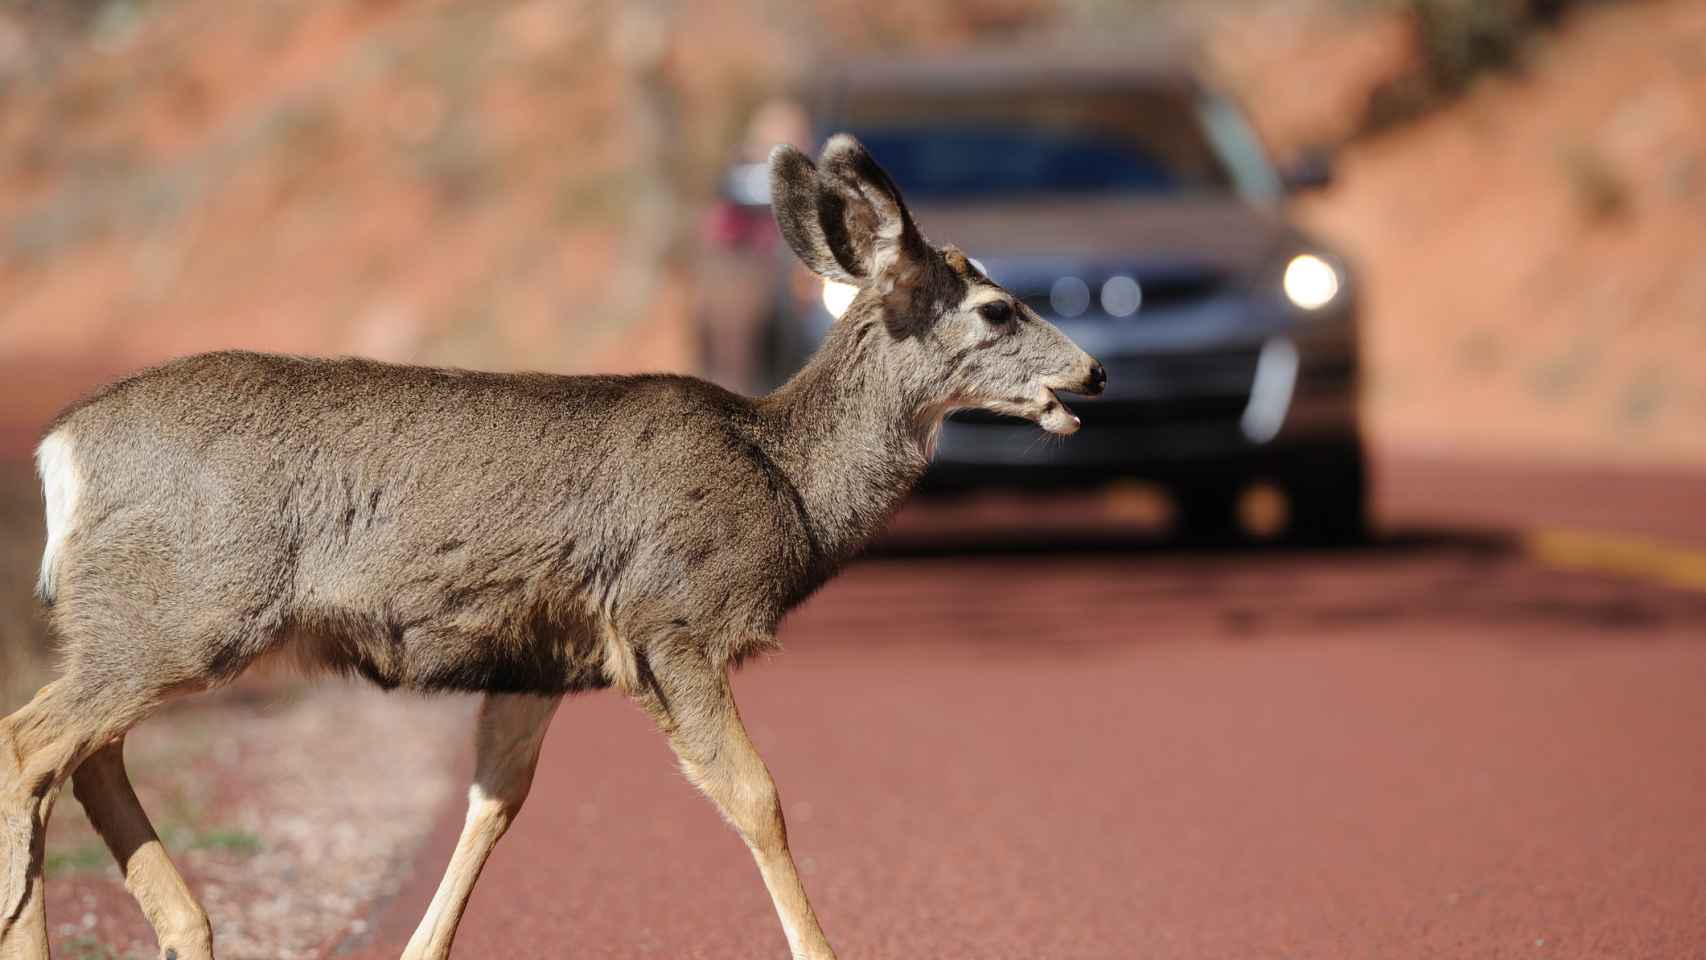 Imagen de archivo con ciervo cruzando una carretera y un vehículo aproximándose.